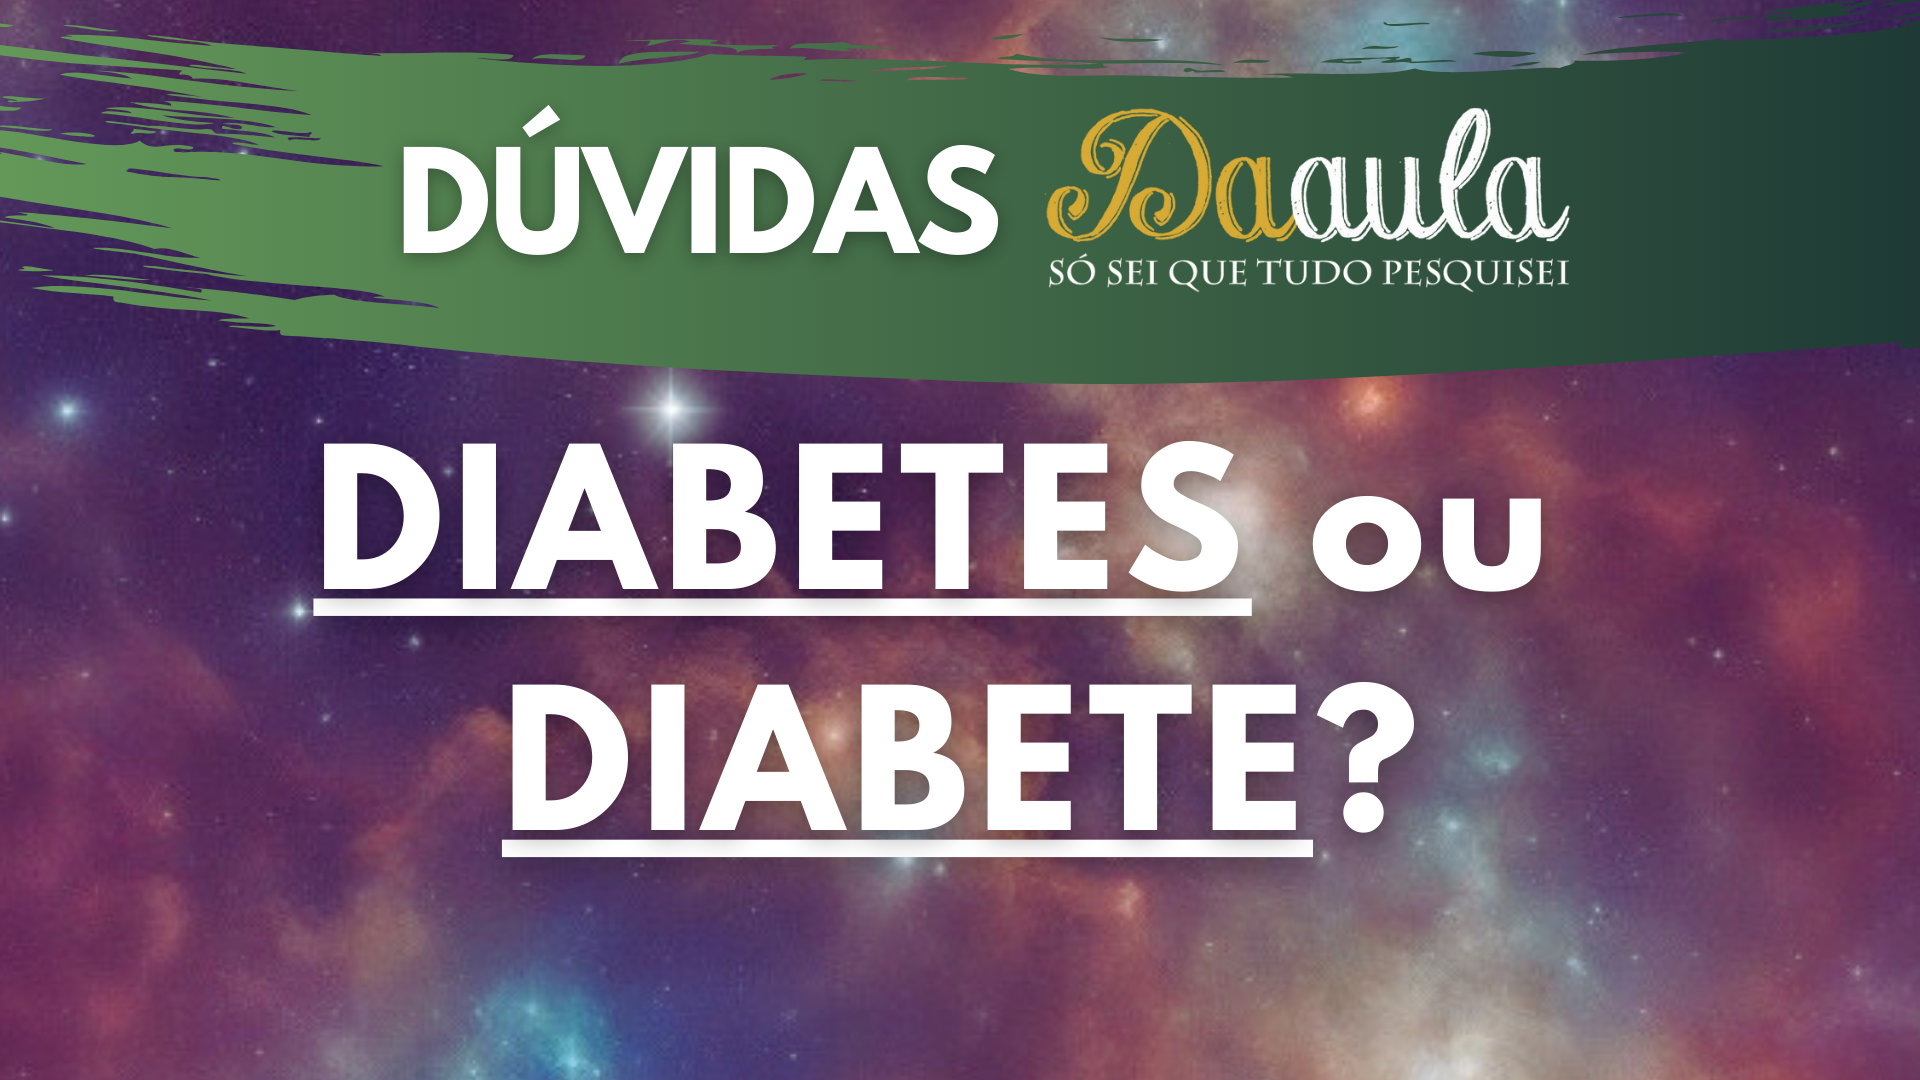 Qual a Forma Correta: Diabete ou Diabetes no plural?